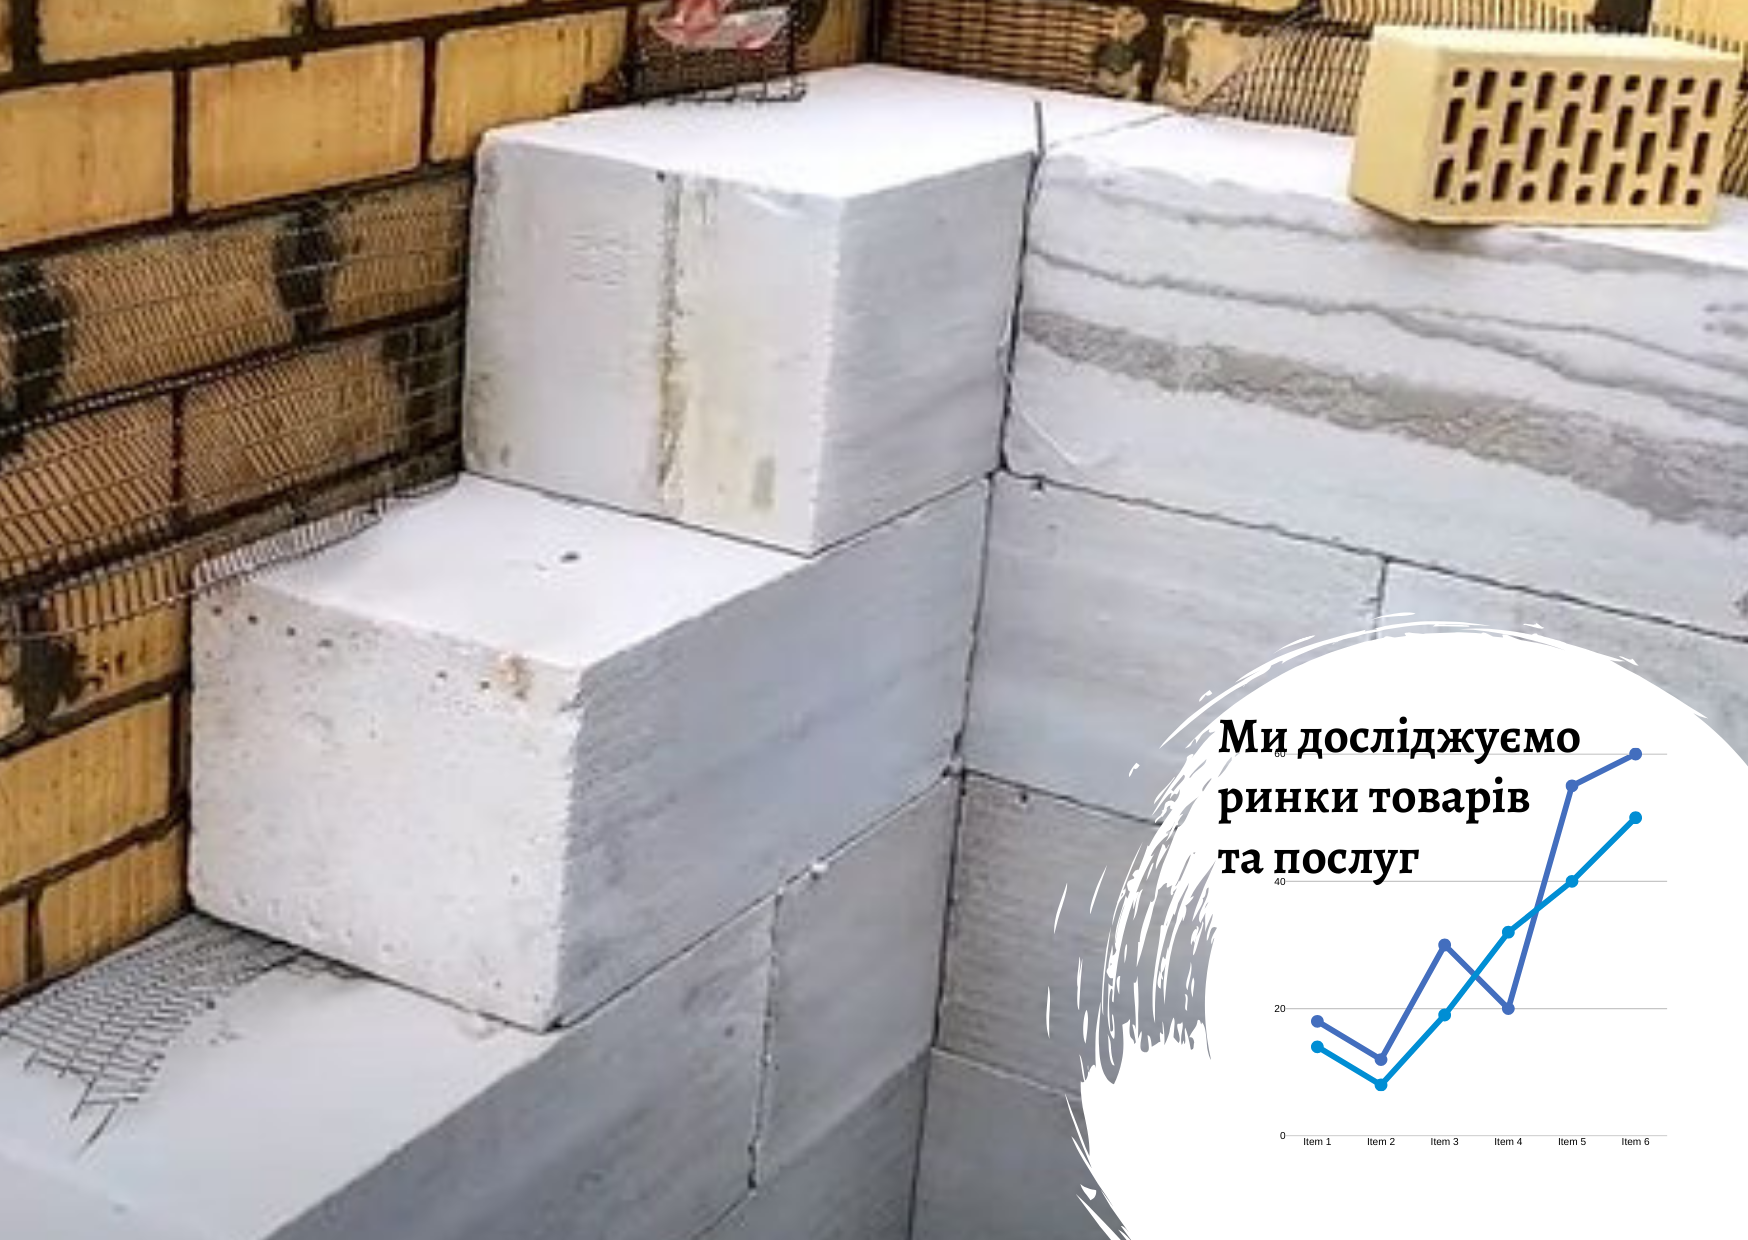 Рынок строительных материалов в Украине: факторы влияния и тенденции развития